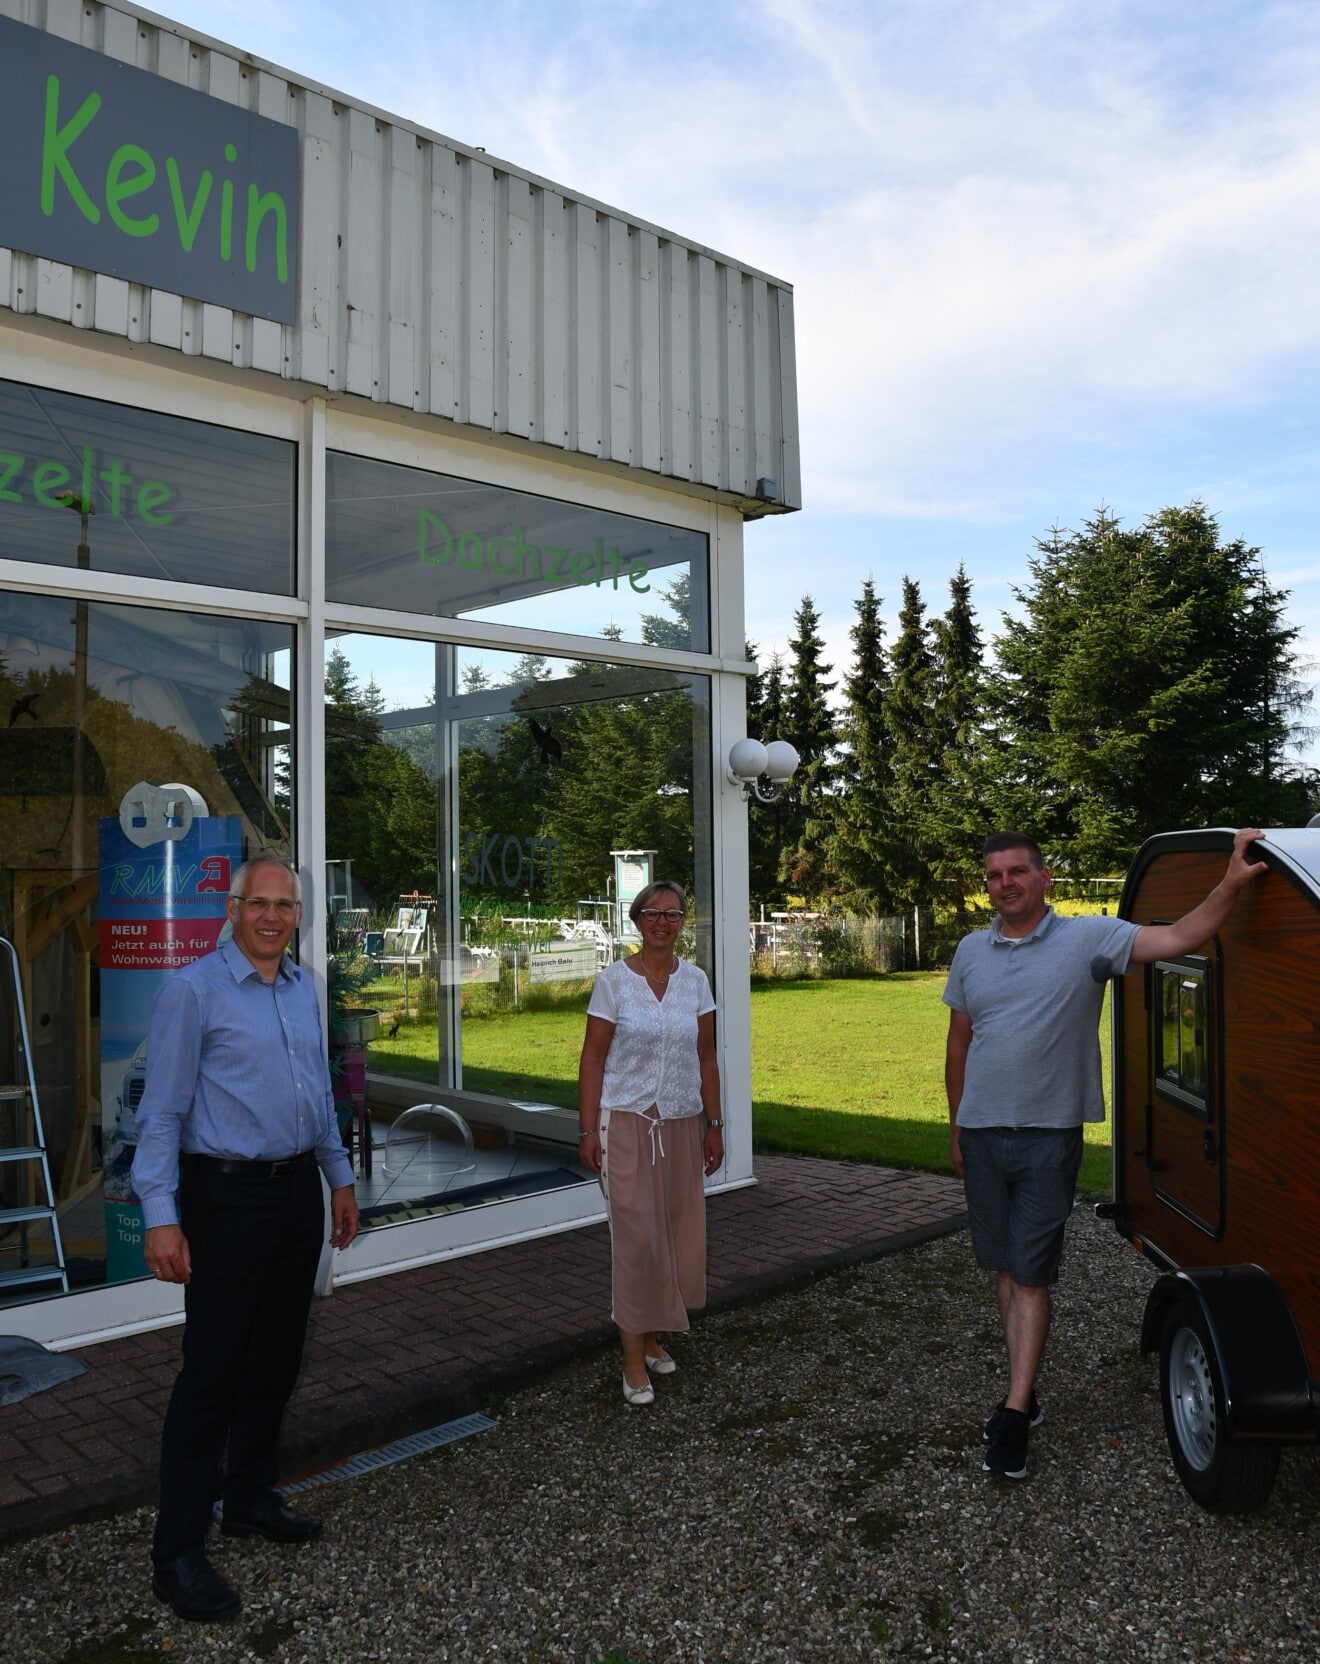 Besuch des Outdoor-Geschäfts von Kevin Jänsch in Schleswig